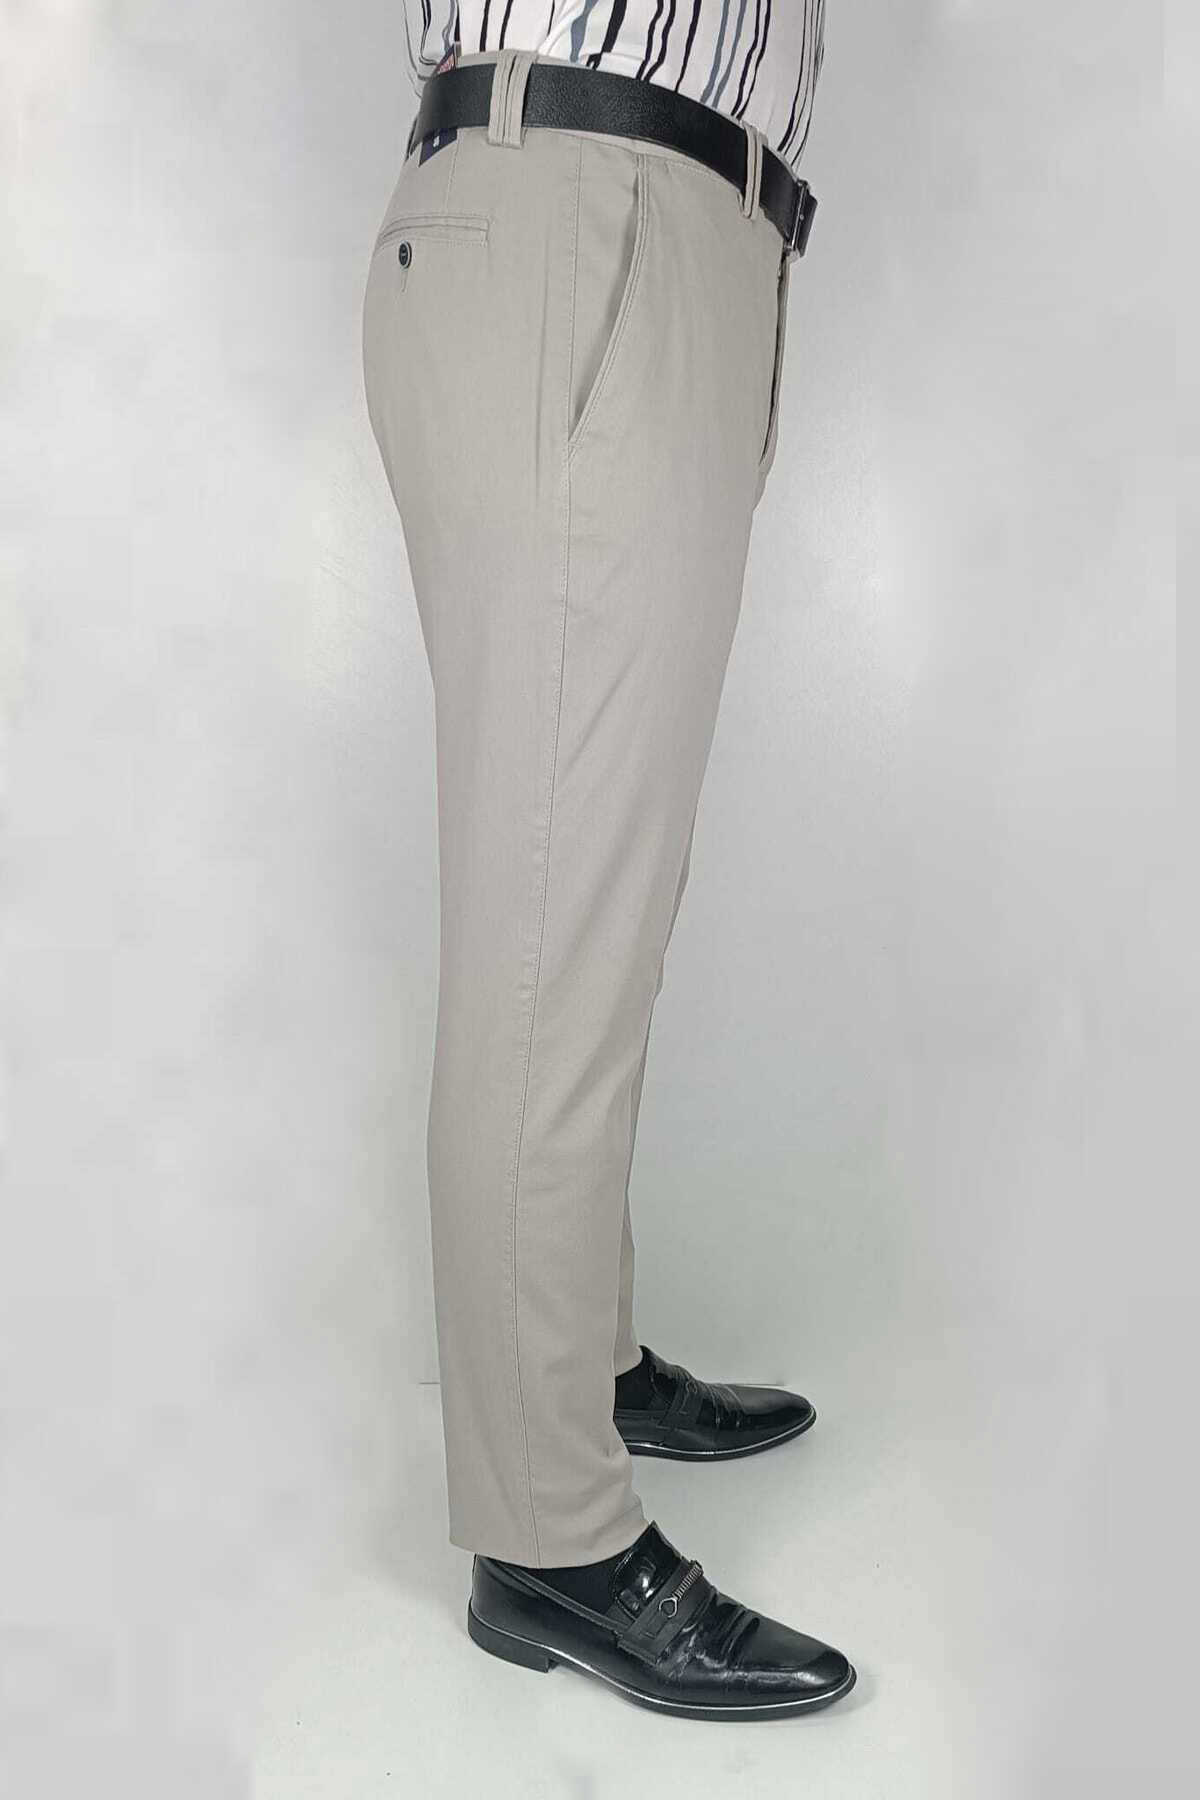 شلوار پارچه ای راسته سایز بزرگ مردانه خاکستری روشن برند Bomonti 